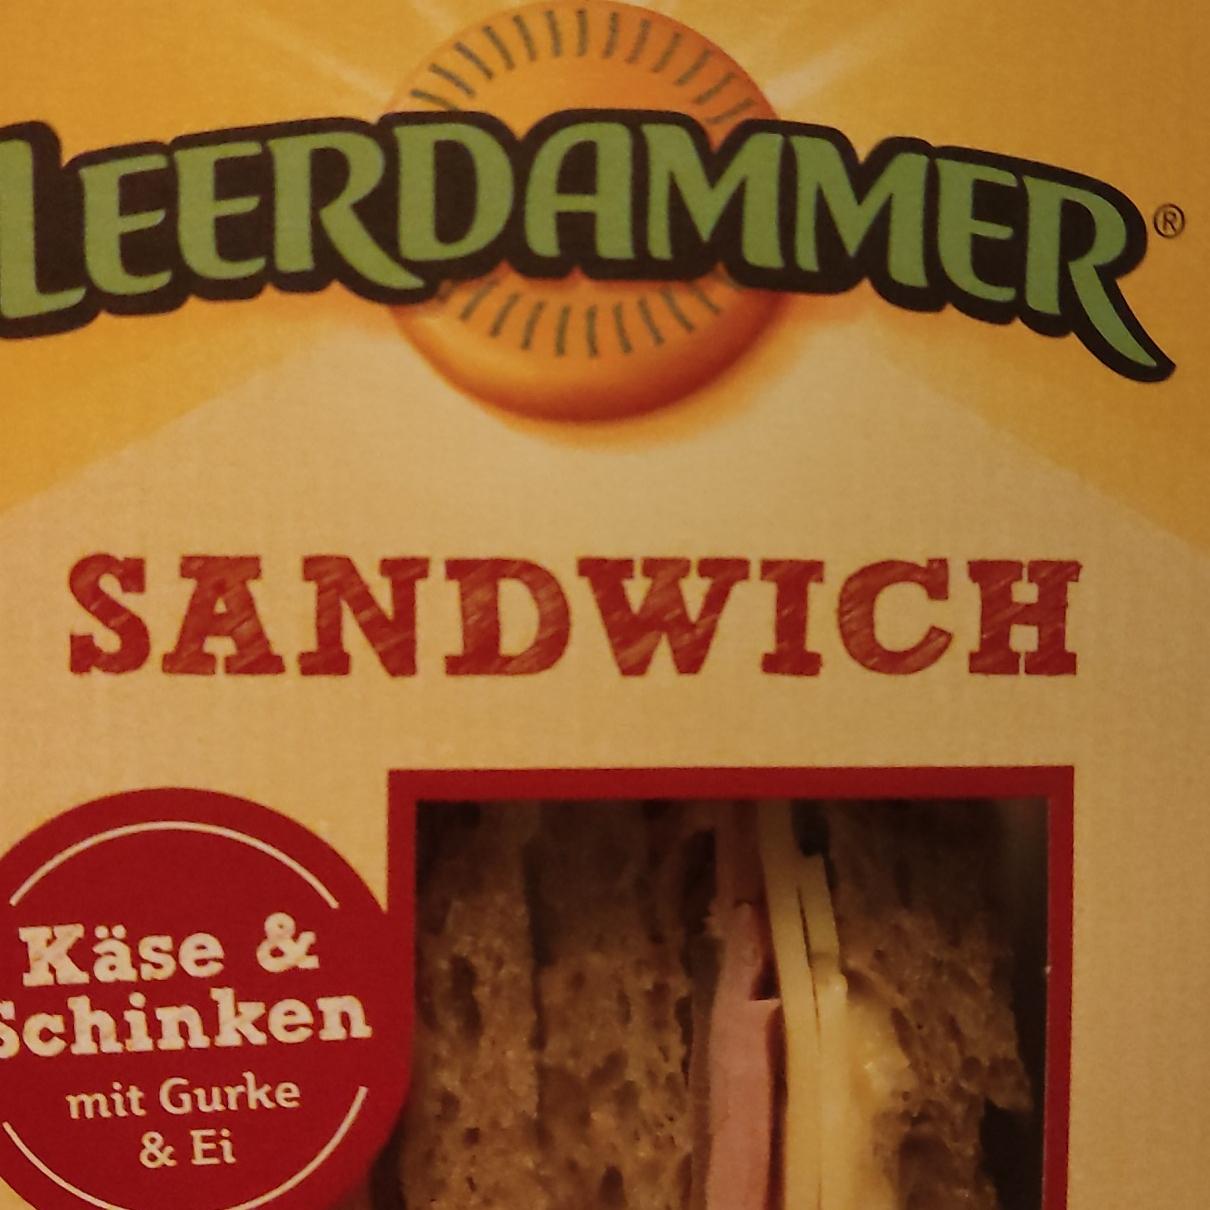 Fotografie - Sandwich Käse & Schinken mit Gurke & Ei Leerdammer